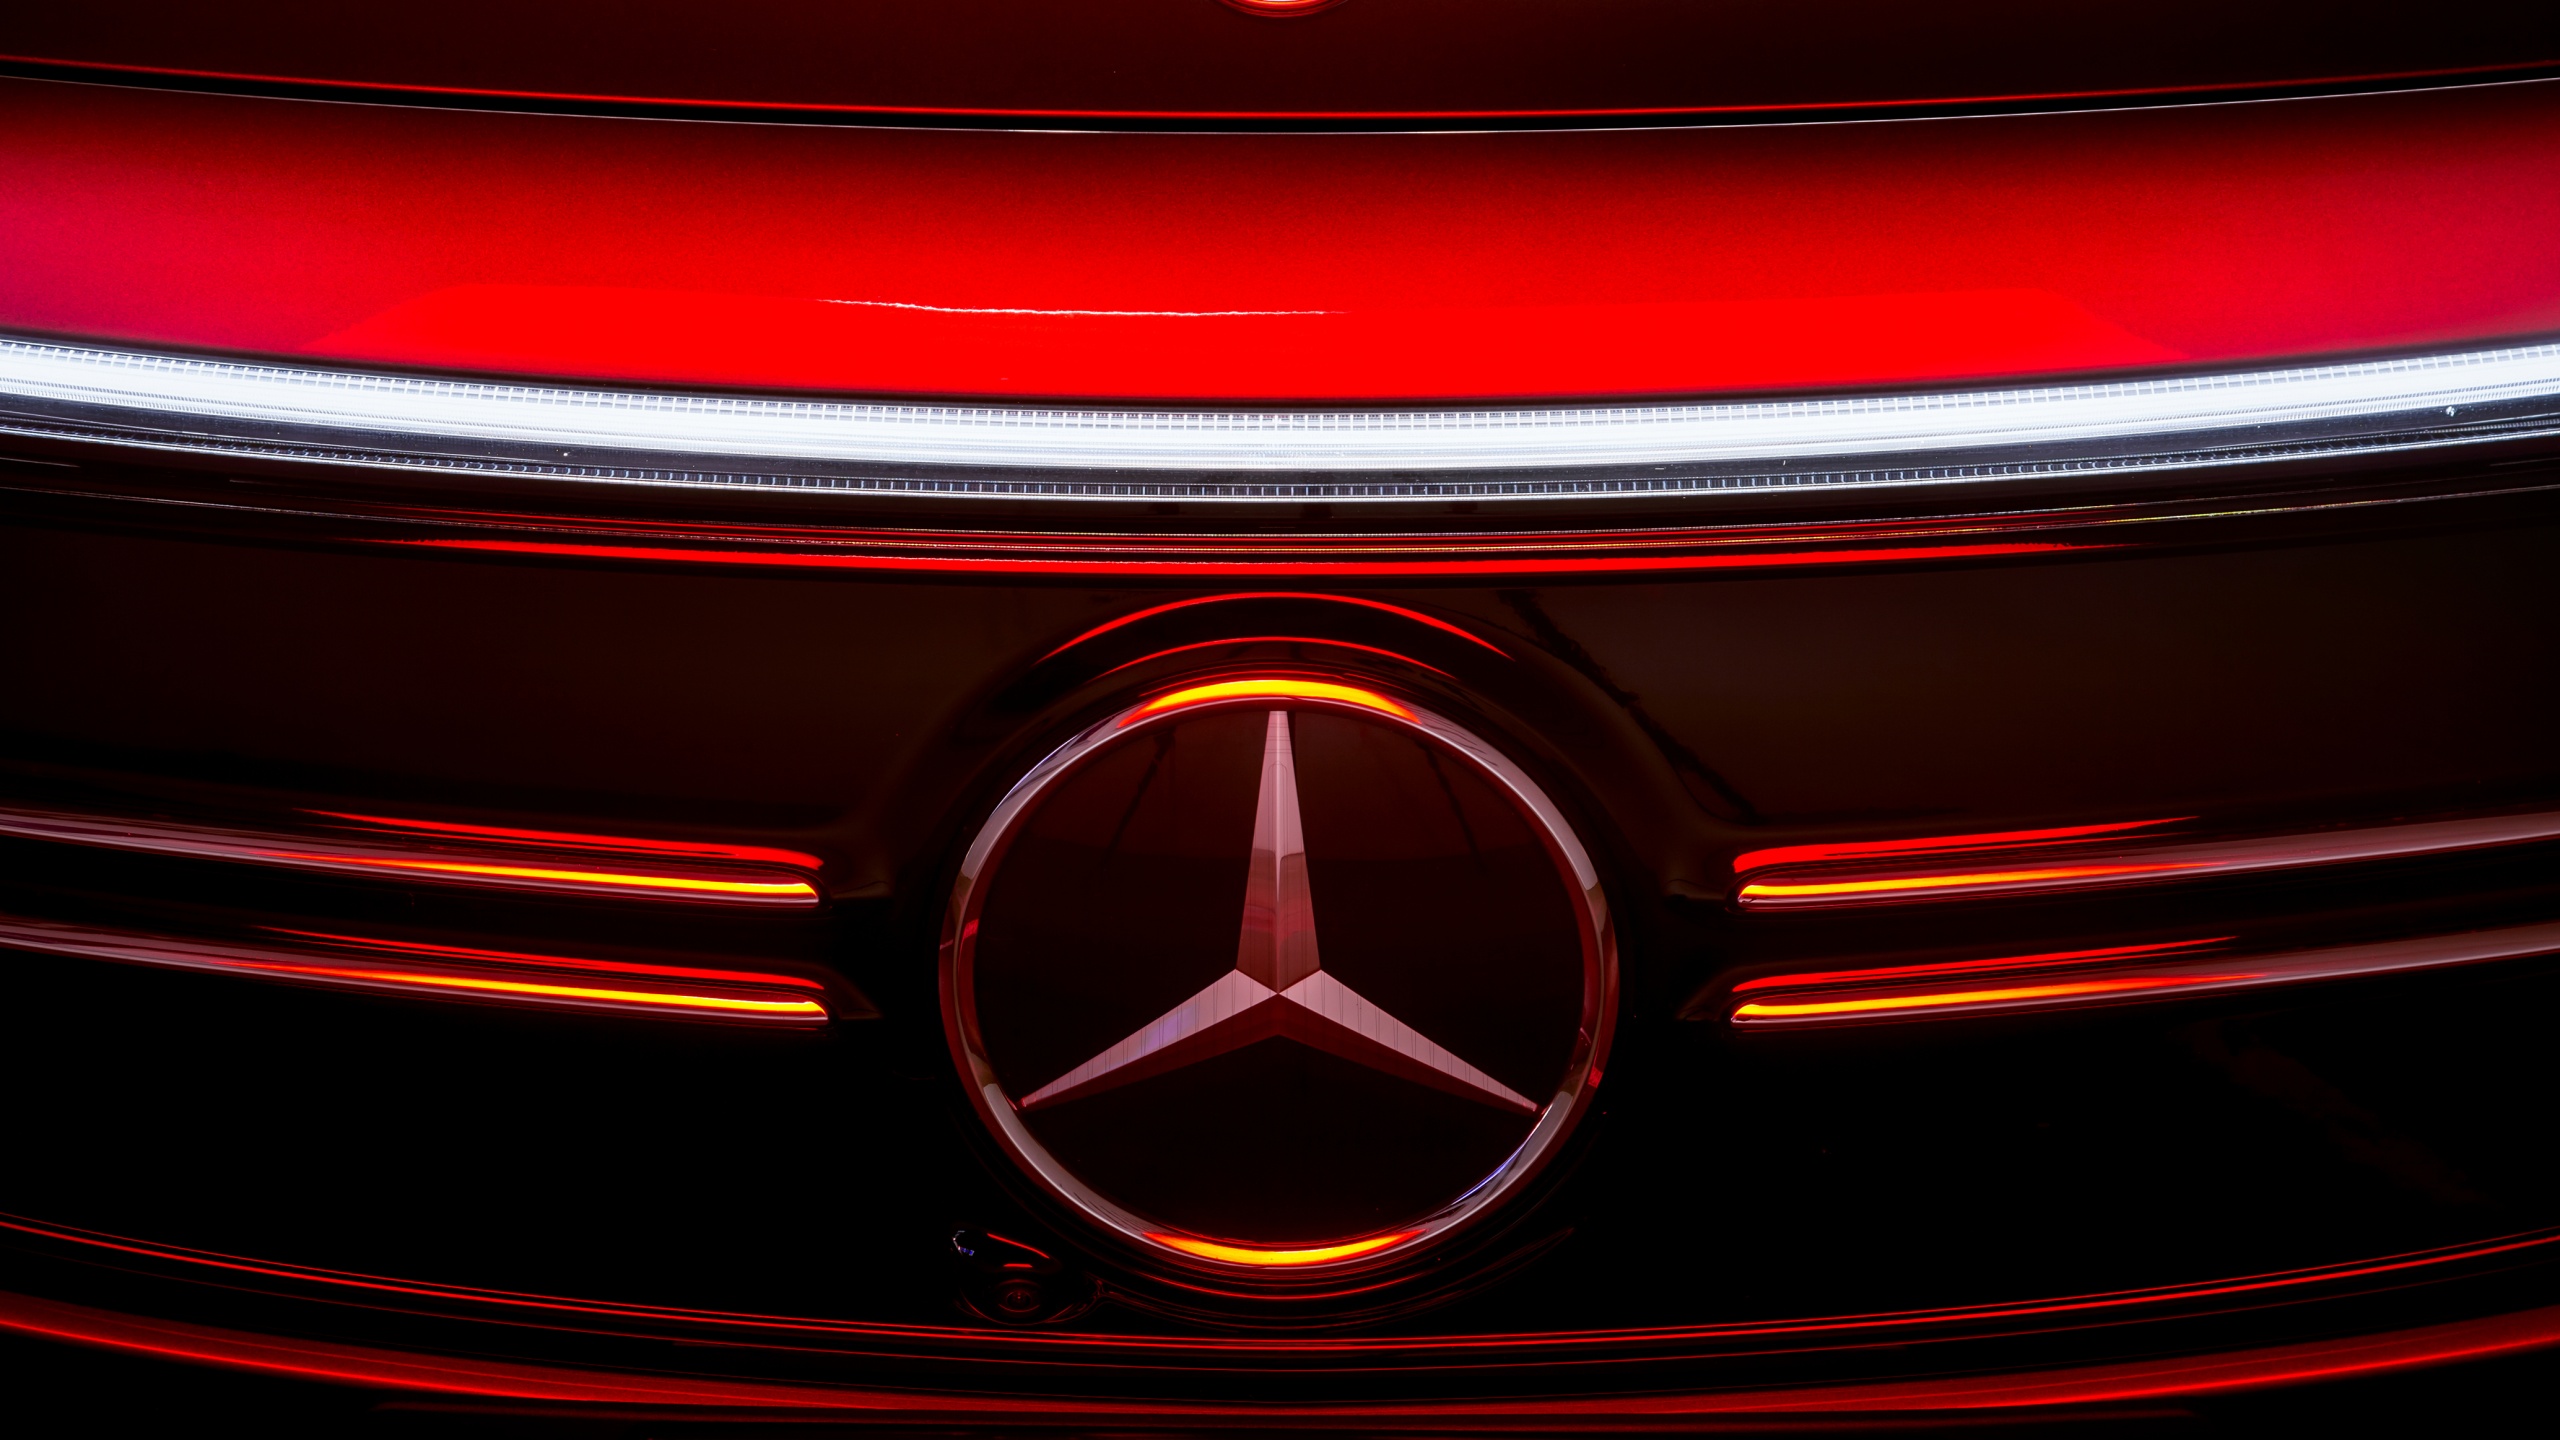 Mercedes Logo, mercedes benz, car, HD phone wallpaper